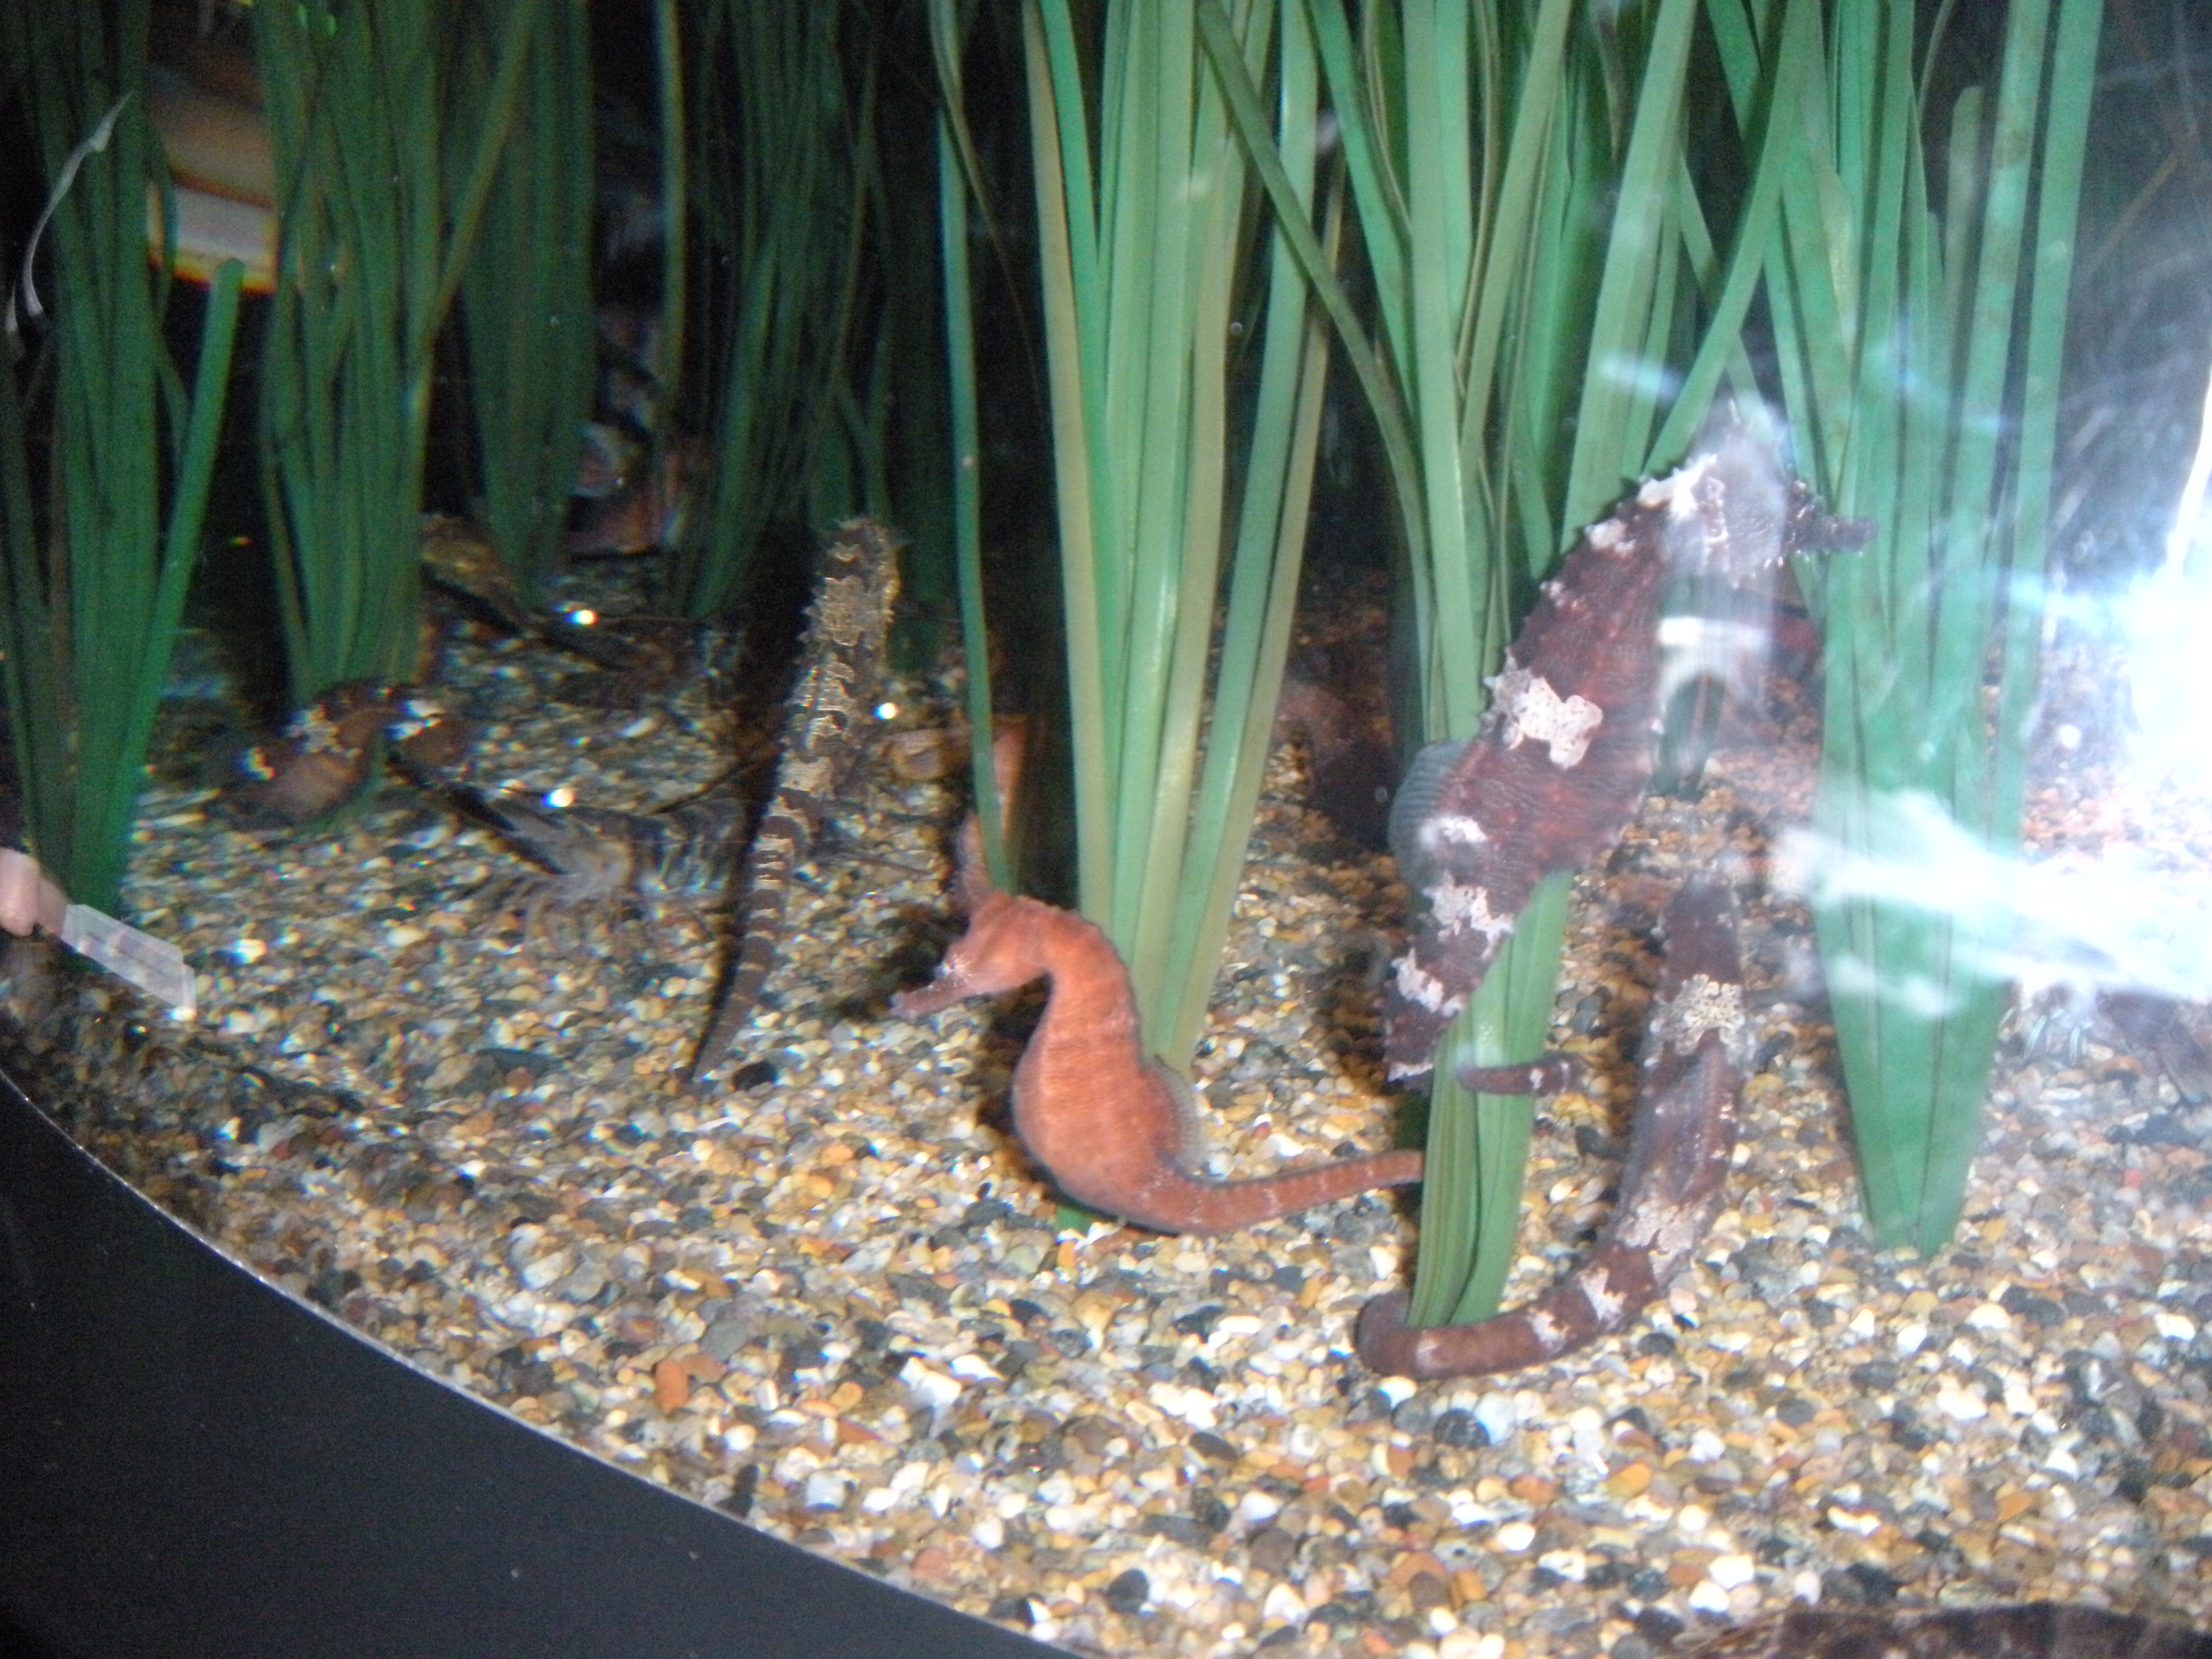 Aquarium trip picture